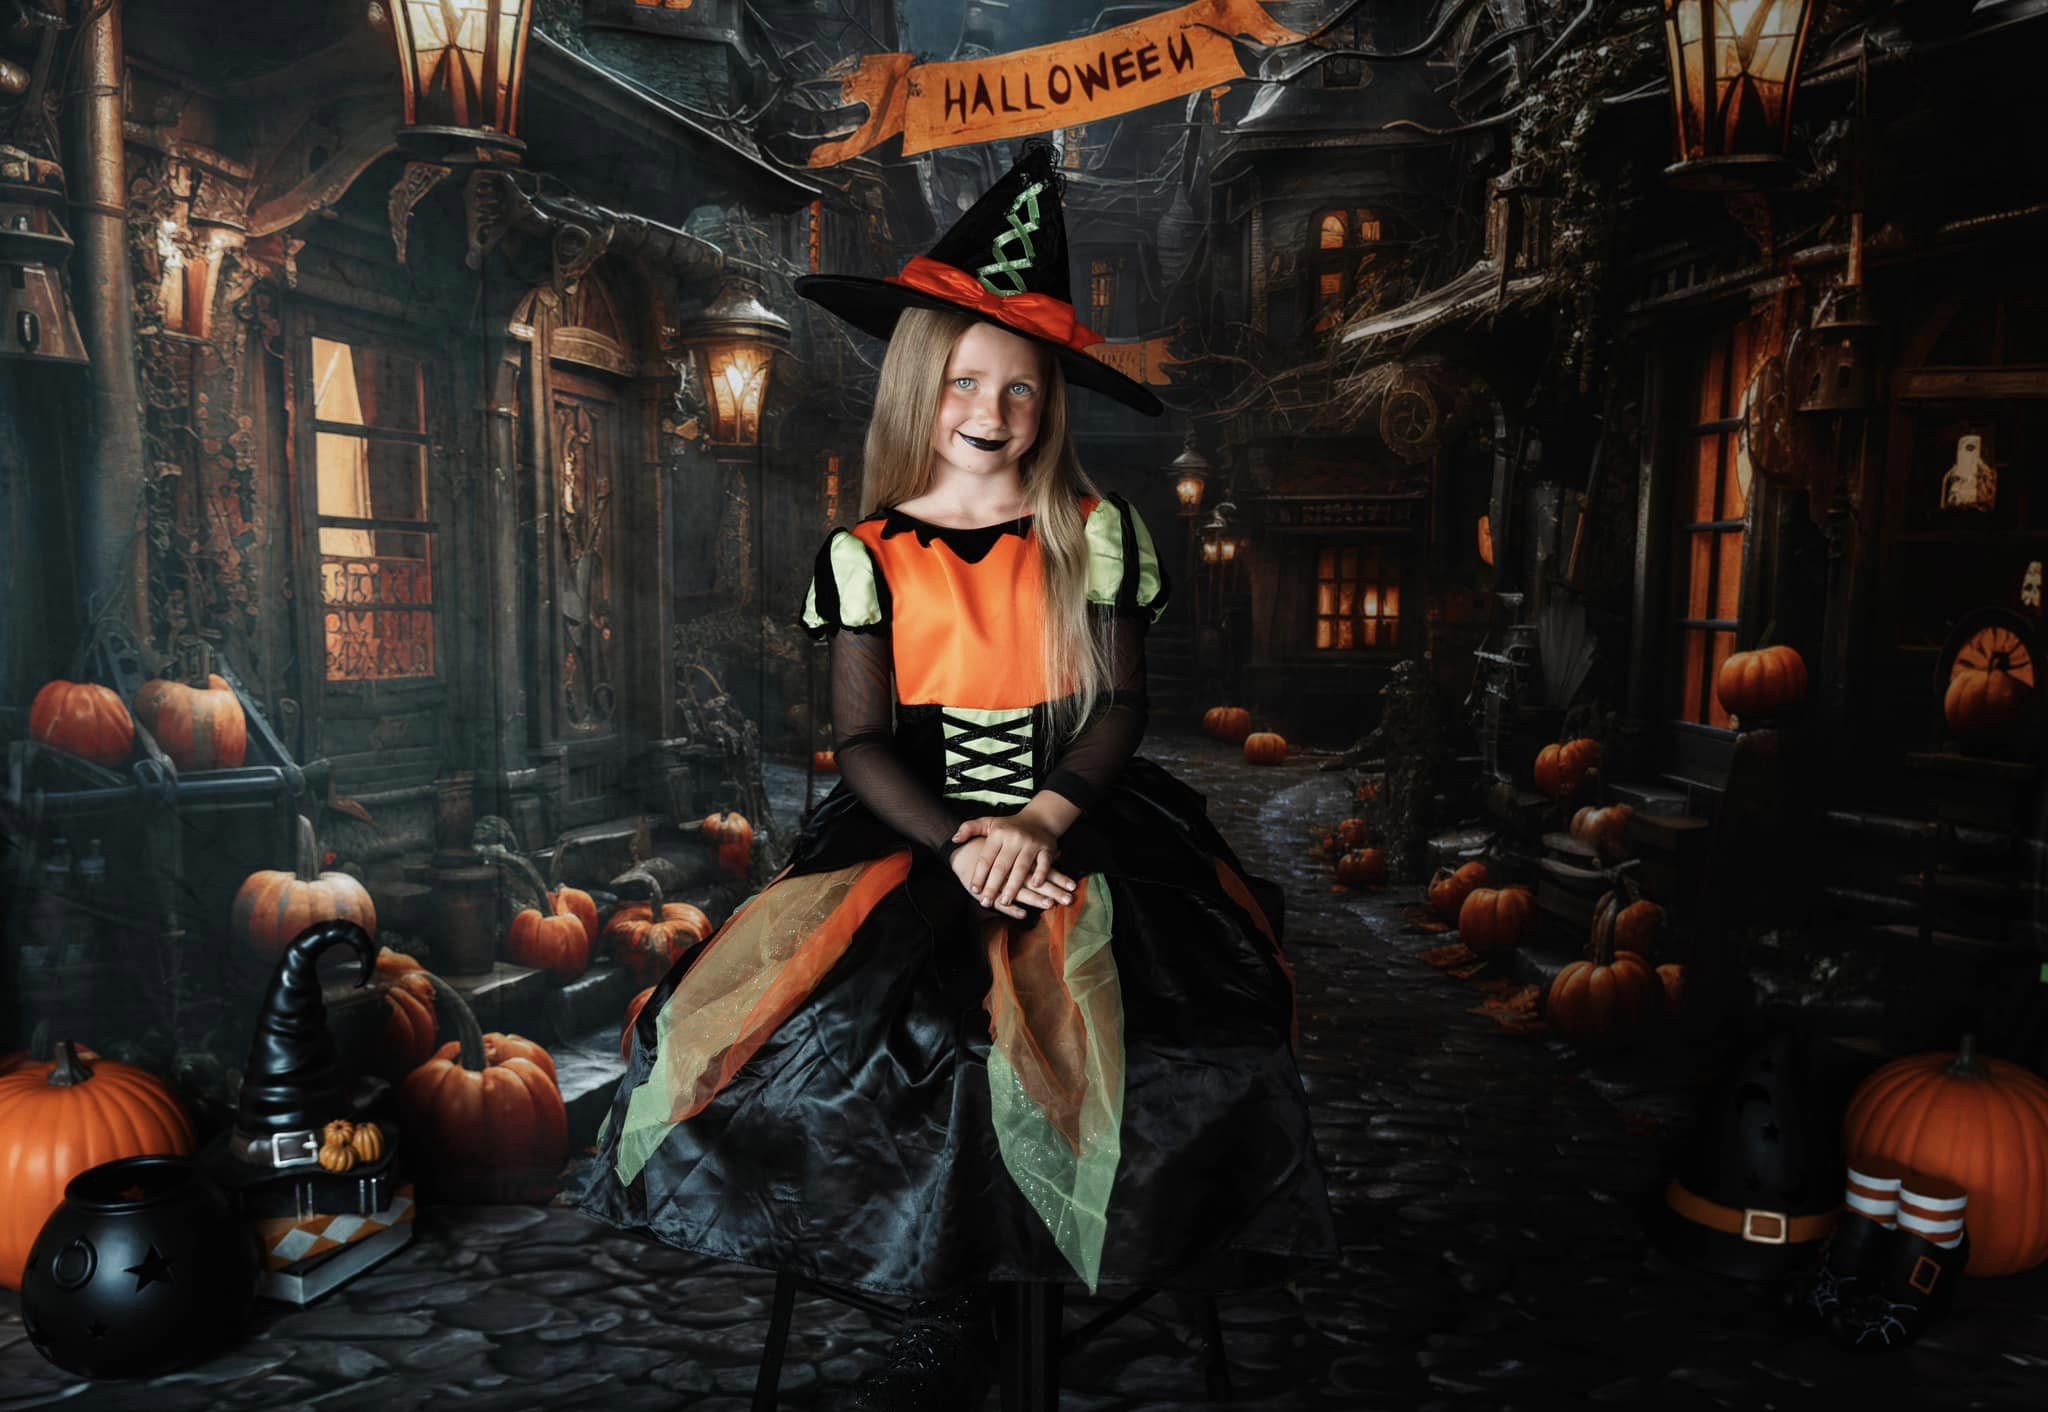 Kate Halloween Straße Kürbis Hintergrund von Emetselch